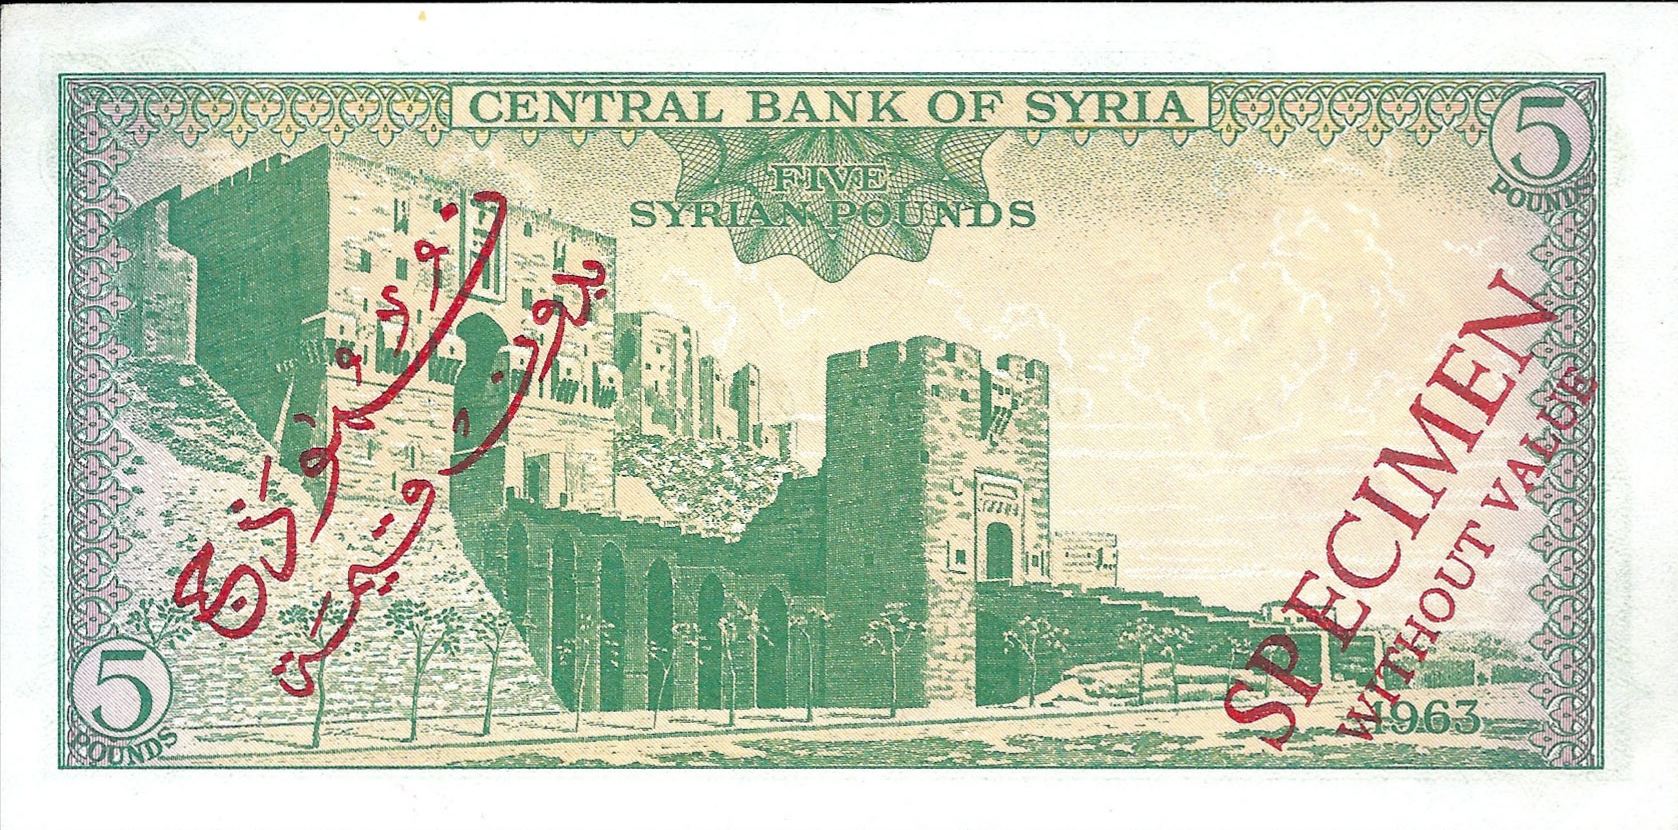 التاريخ السوري المعاصر - النقود والعملات الورقية السورية 1963 – خمس ليرات سورية